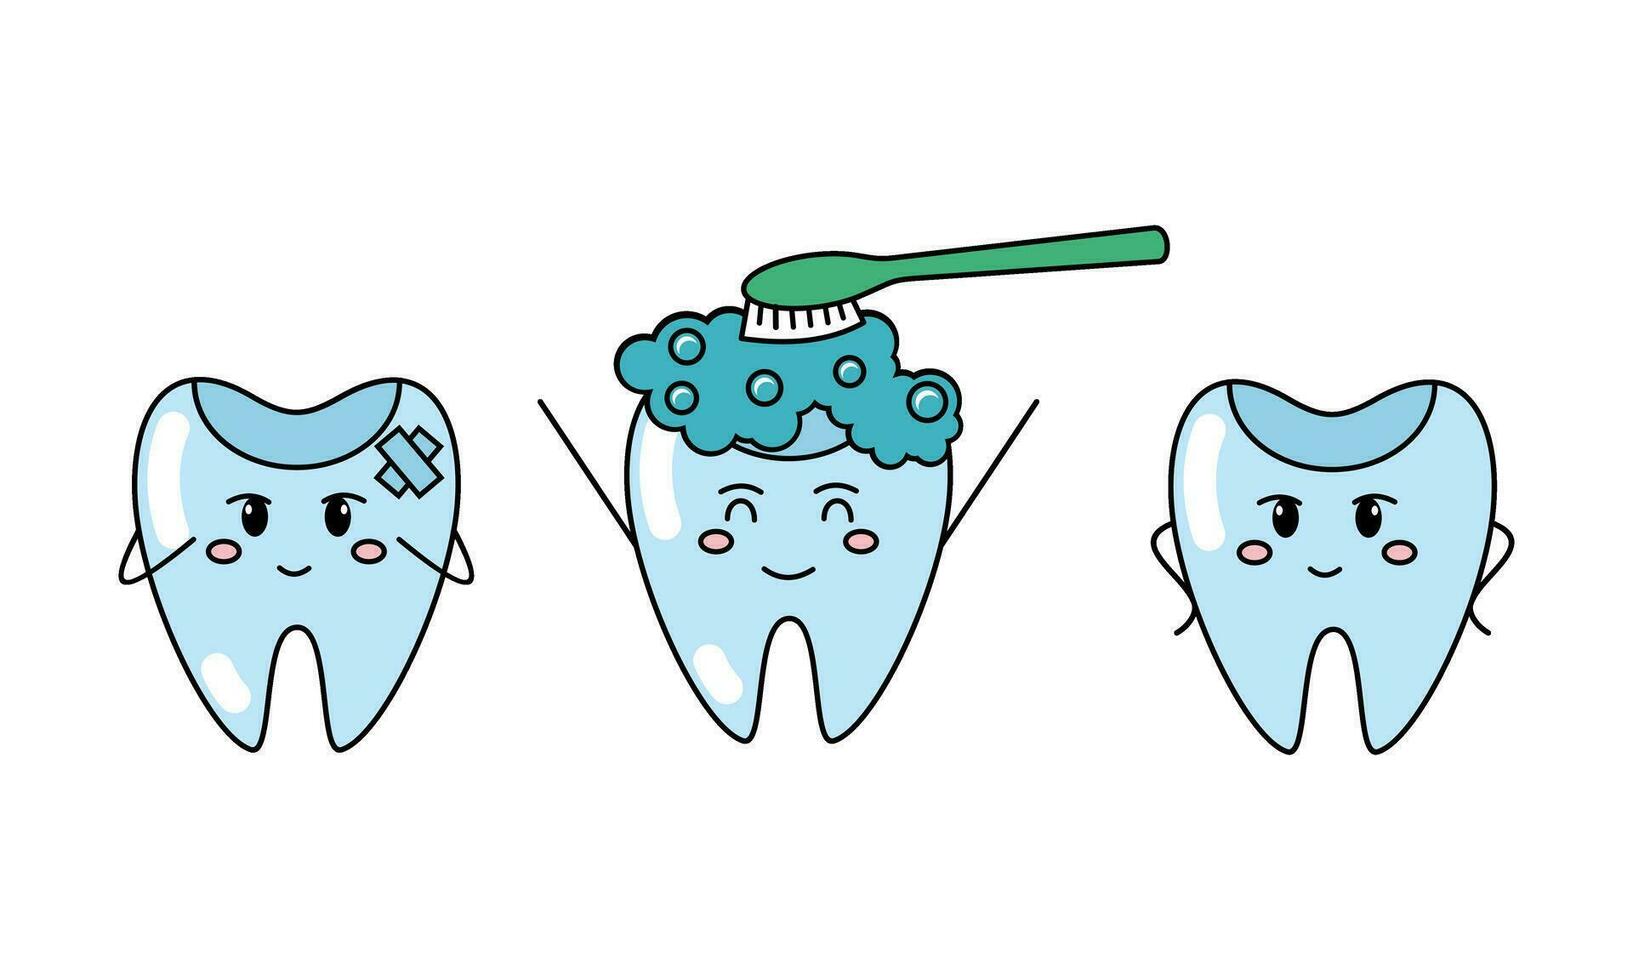 Zähne Bürste, Zahn, Oral Hygiene Zahnbürste, Zahnpasta Konzept vektor